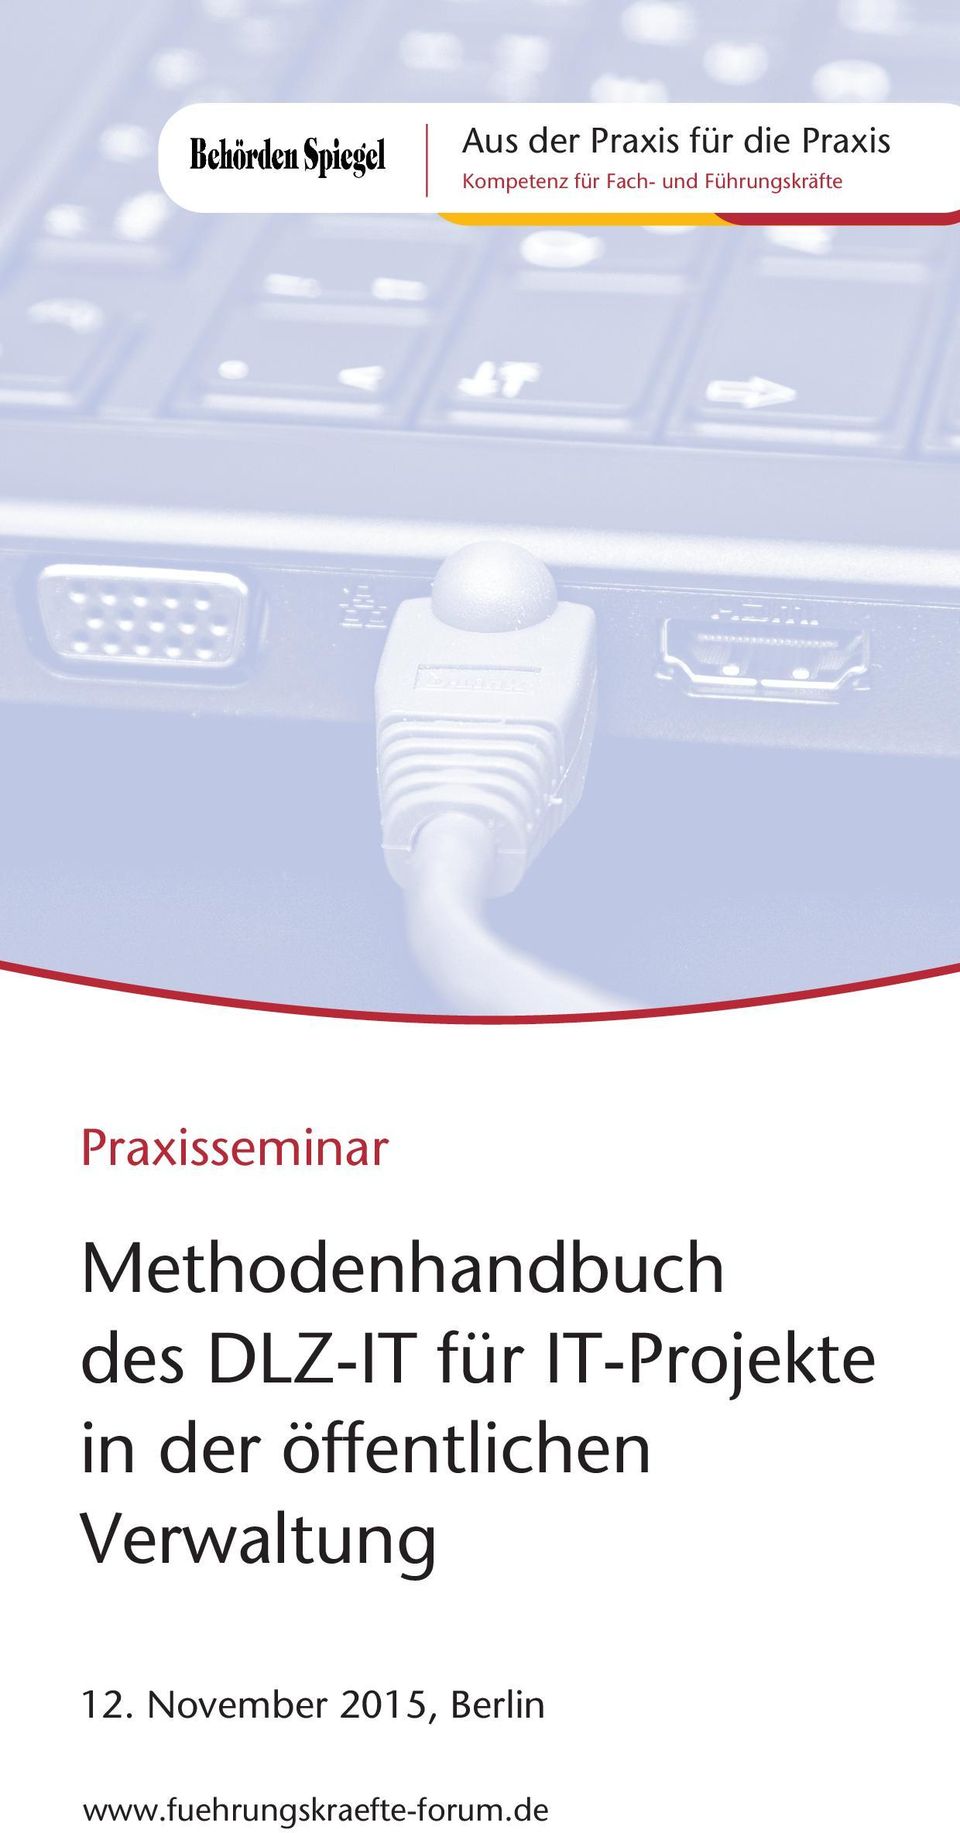 DLZ-IT für IT-Projekte in der öffentlichen Verwaltung